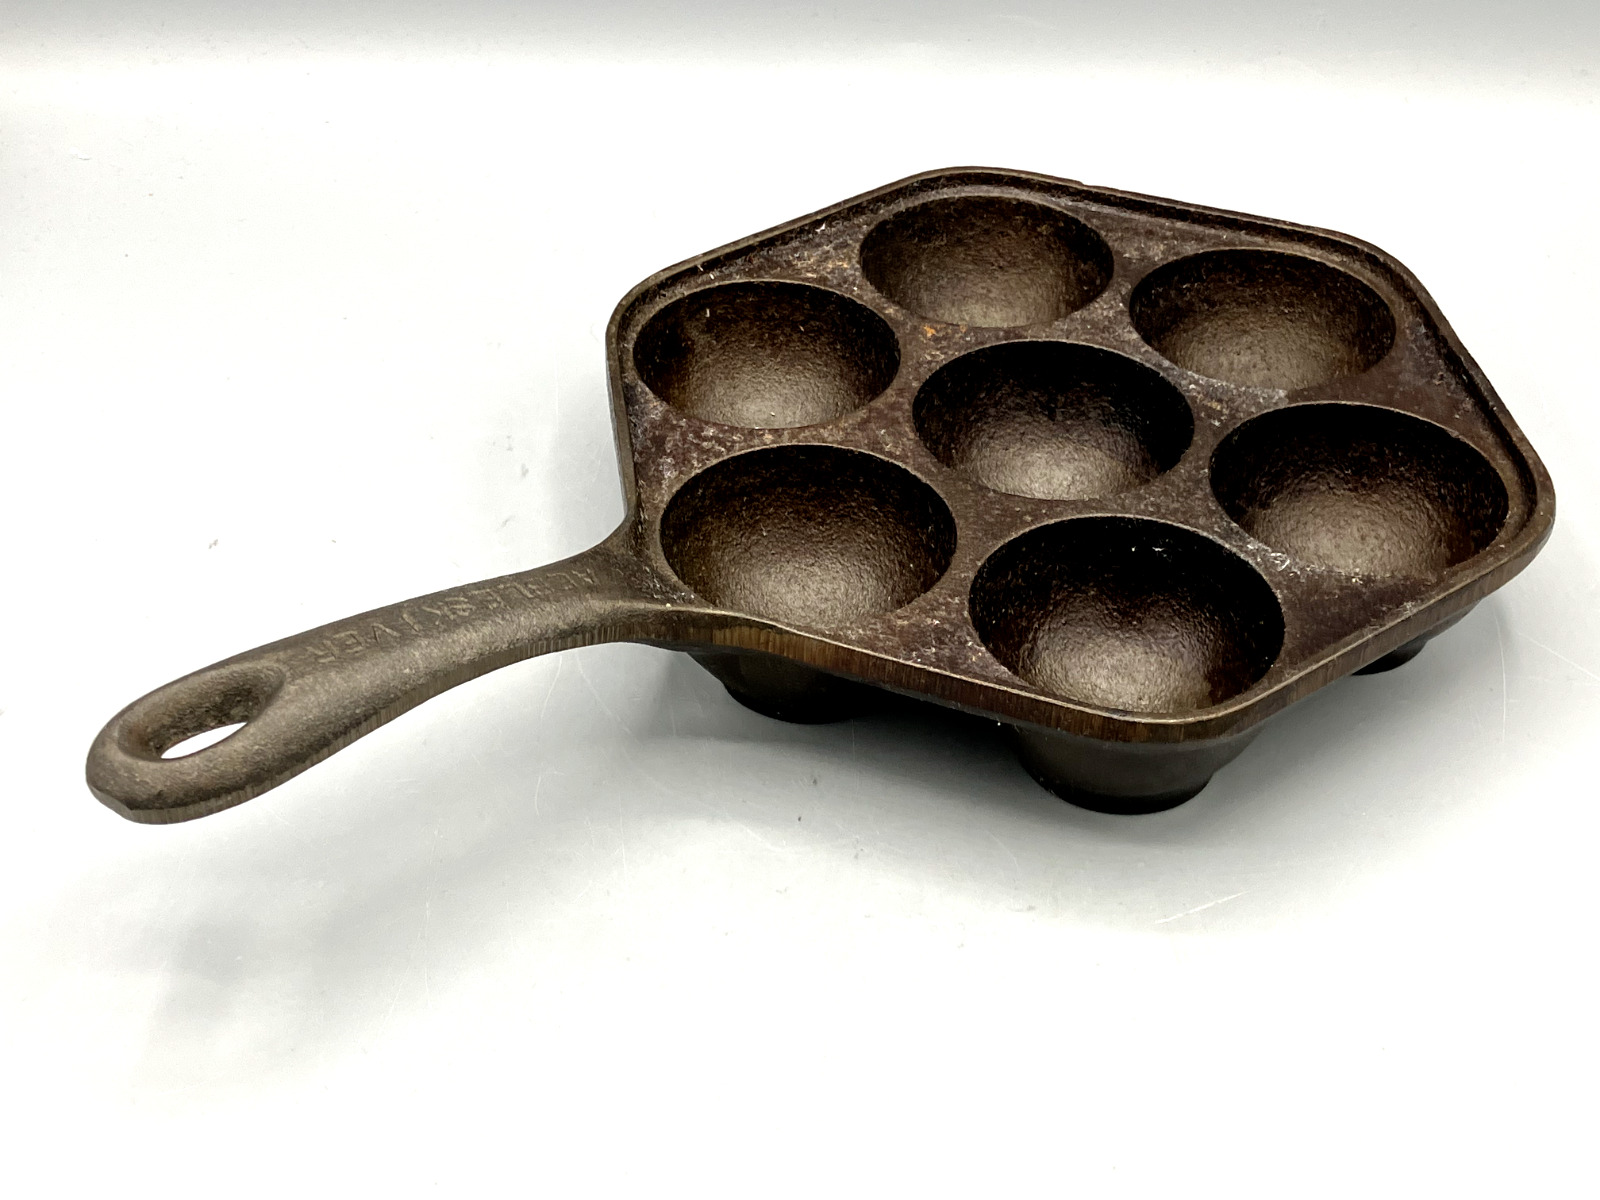 Vintage Cast Iron 7 Aebleskiver Danish Pancake Poaching Pan - No Chips, Cracks